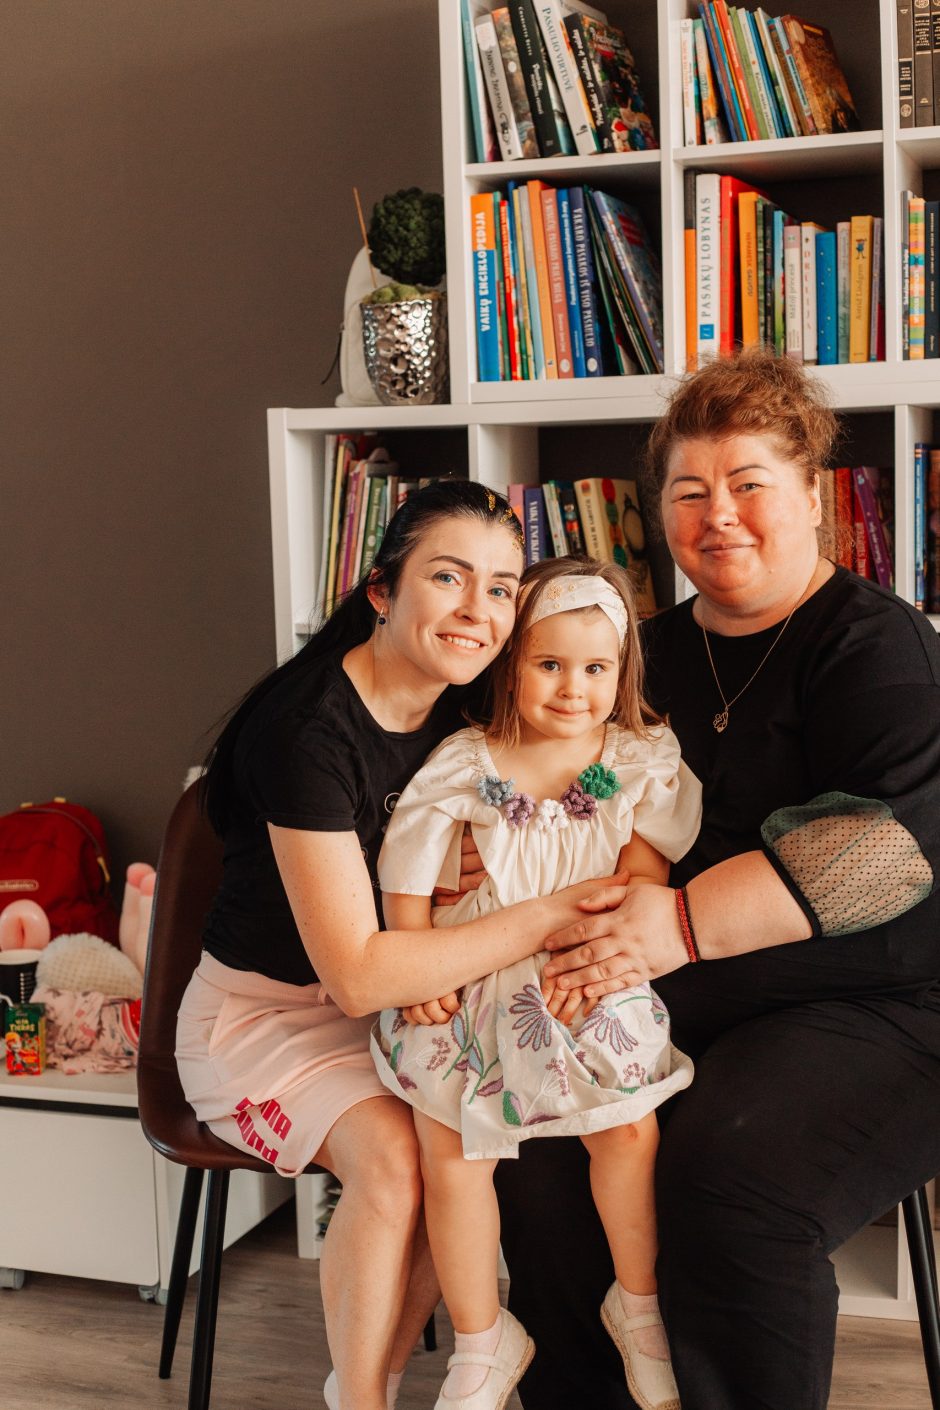 „Mamų unijos“ globotinės Marijos planas Lietuvai: pasveikę vaikai kurs naujos kartos valstybę